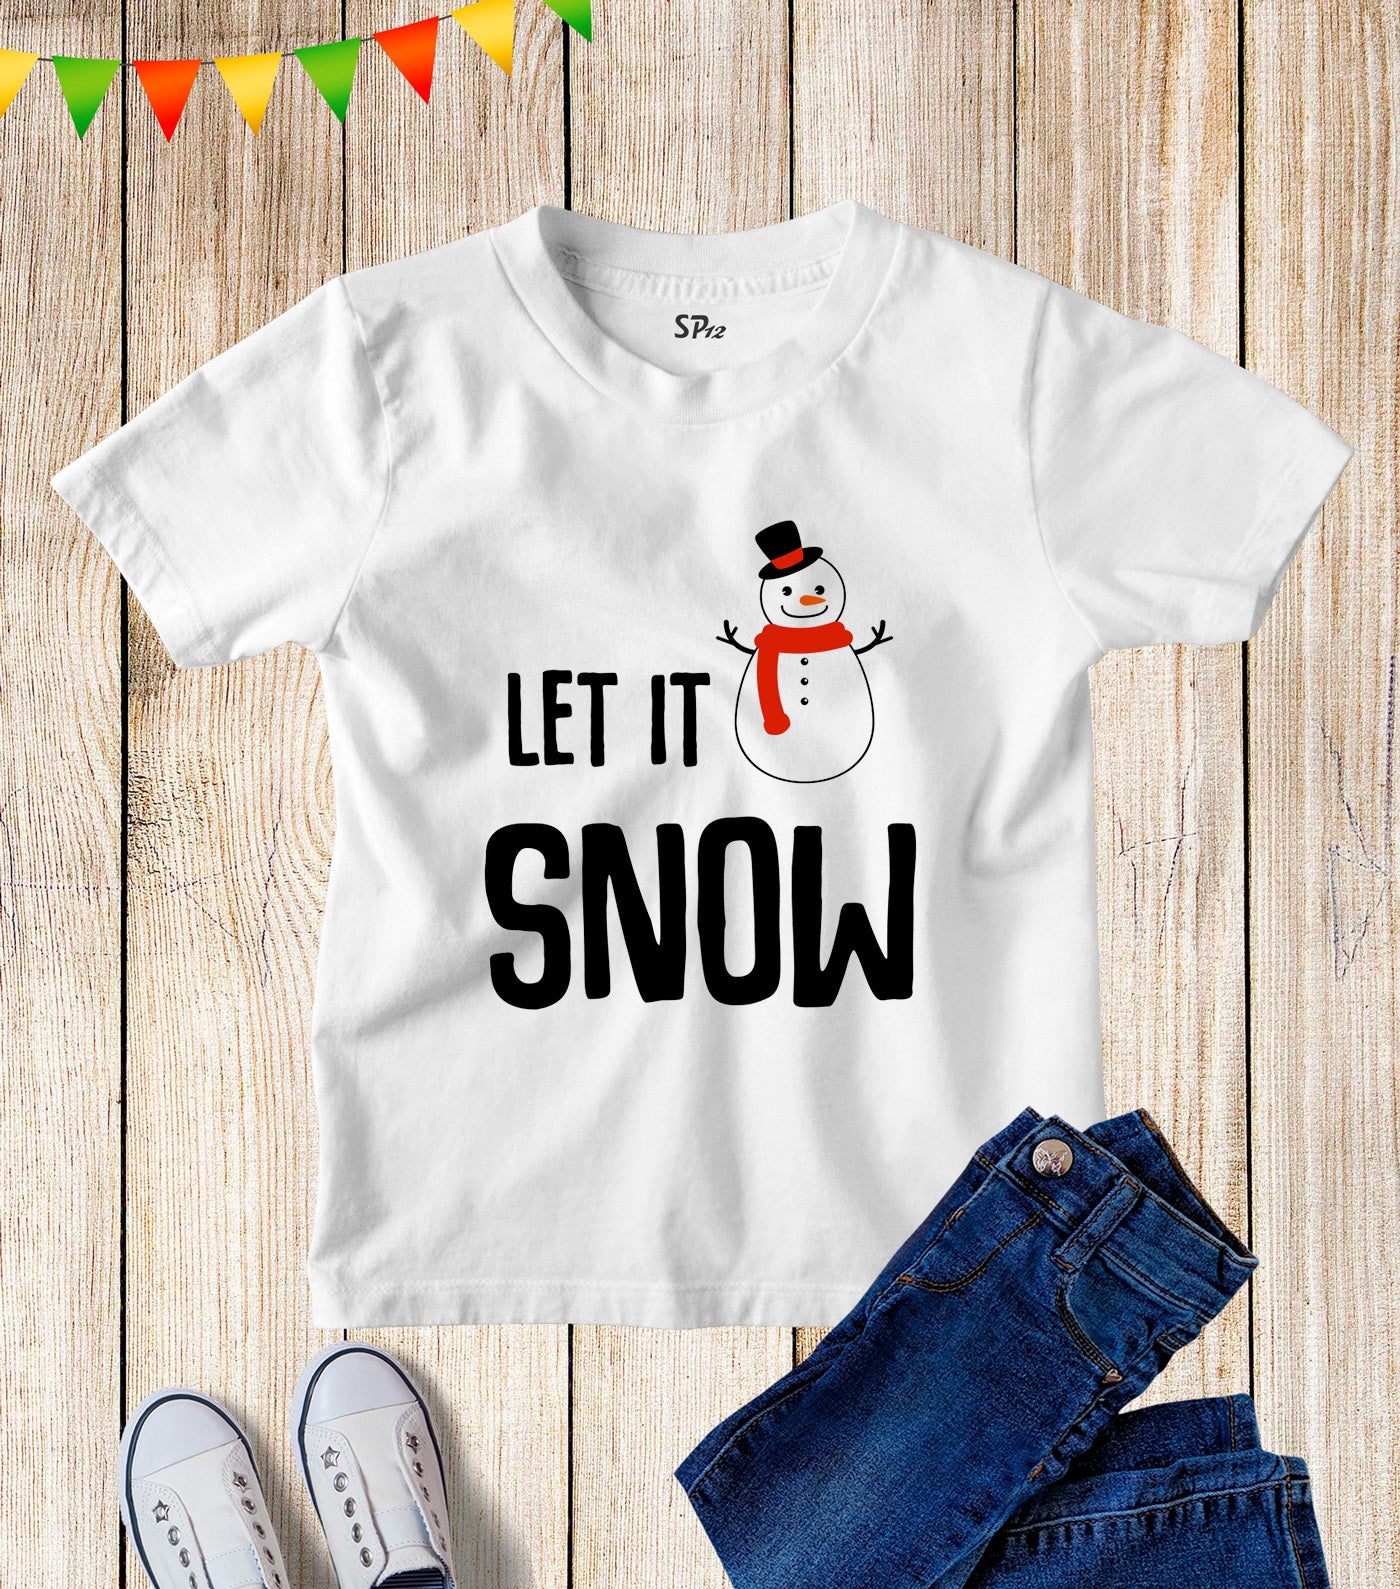 Let It Snow Kids T Shirt